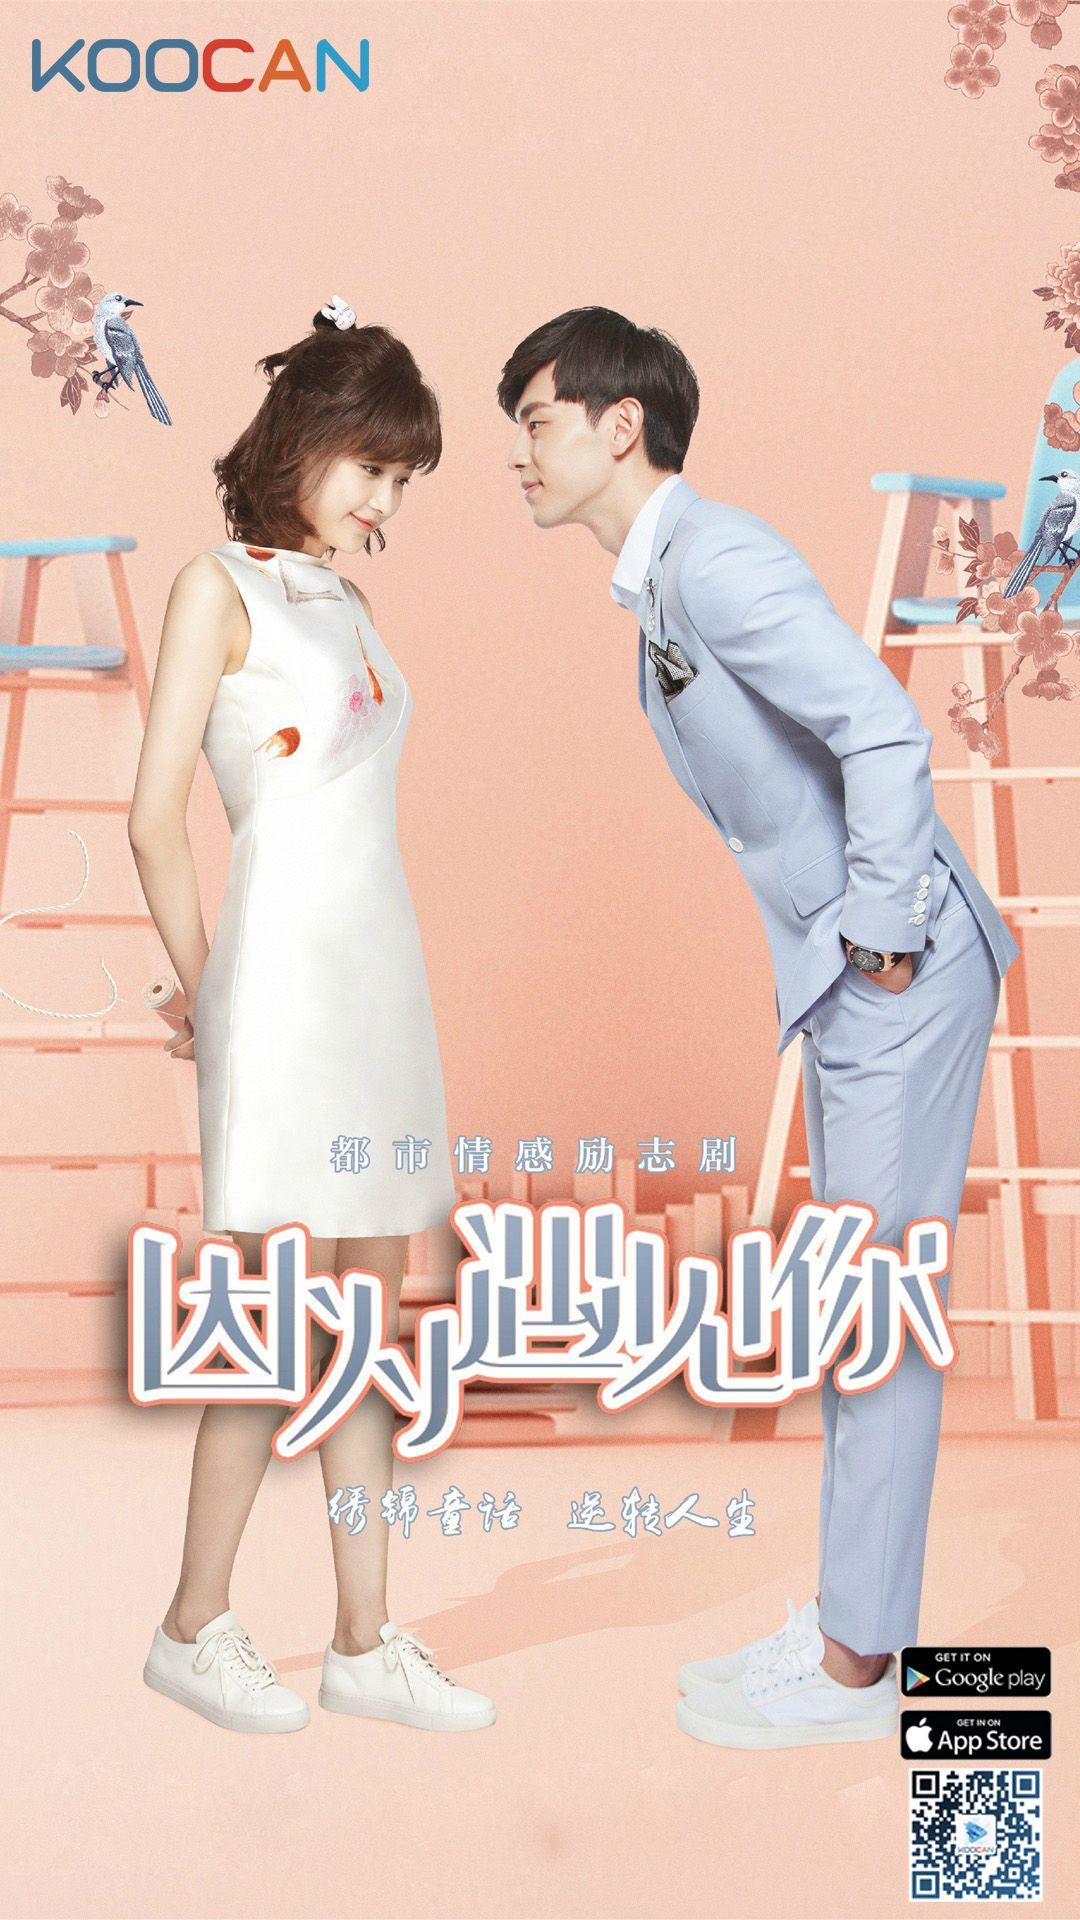 因为遇见你. Chinese Drama HD Wallpaper Mobile Device in 2019